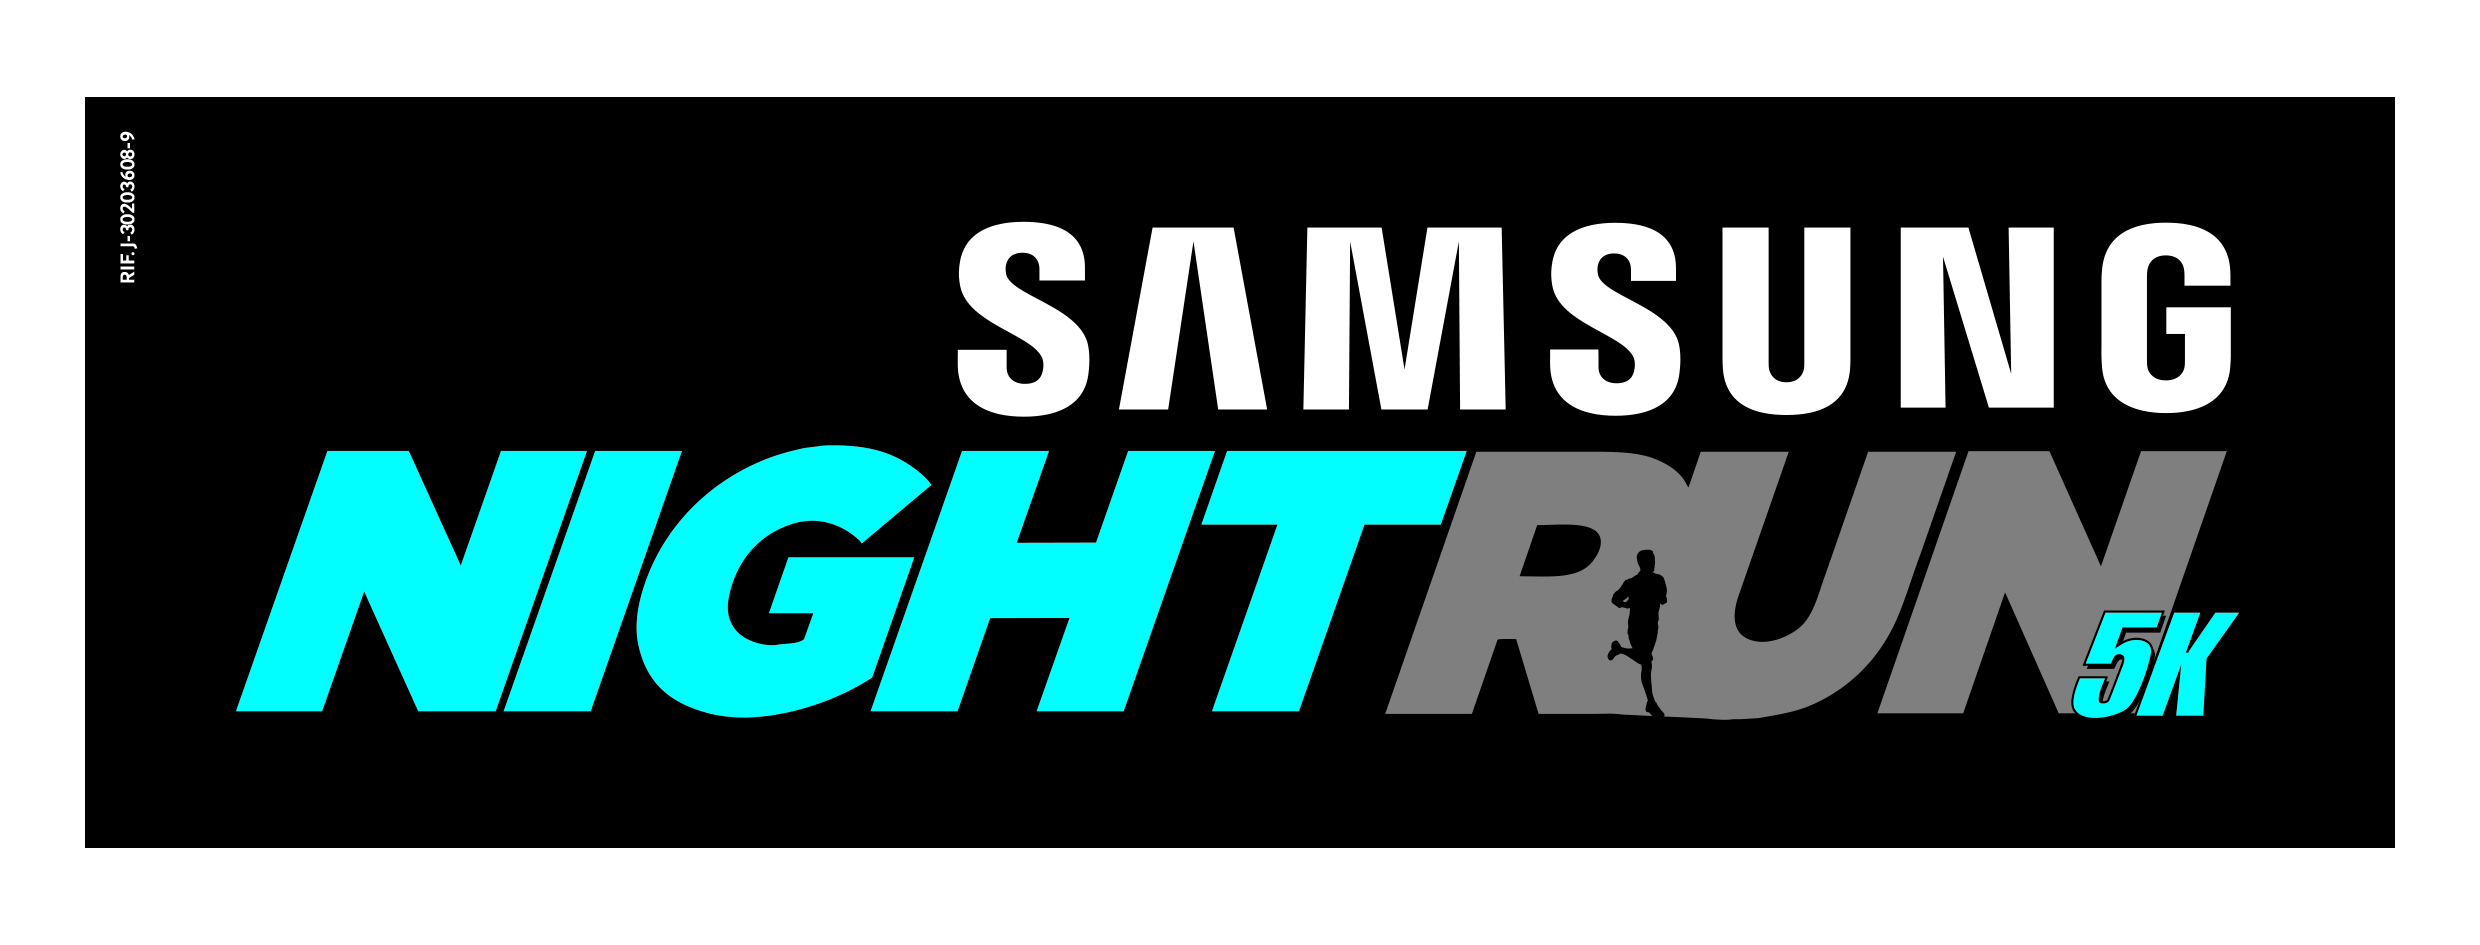 Ya todo está listo para la primera Carrera nocturna de Caracas “Samsung Nightrun 5K”